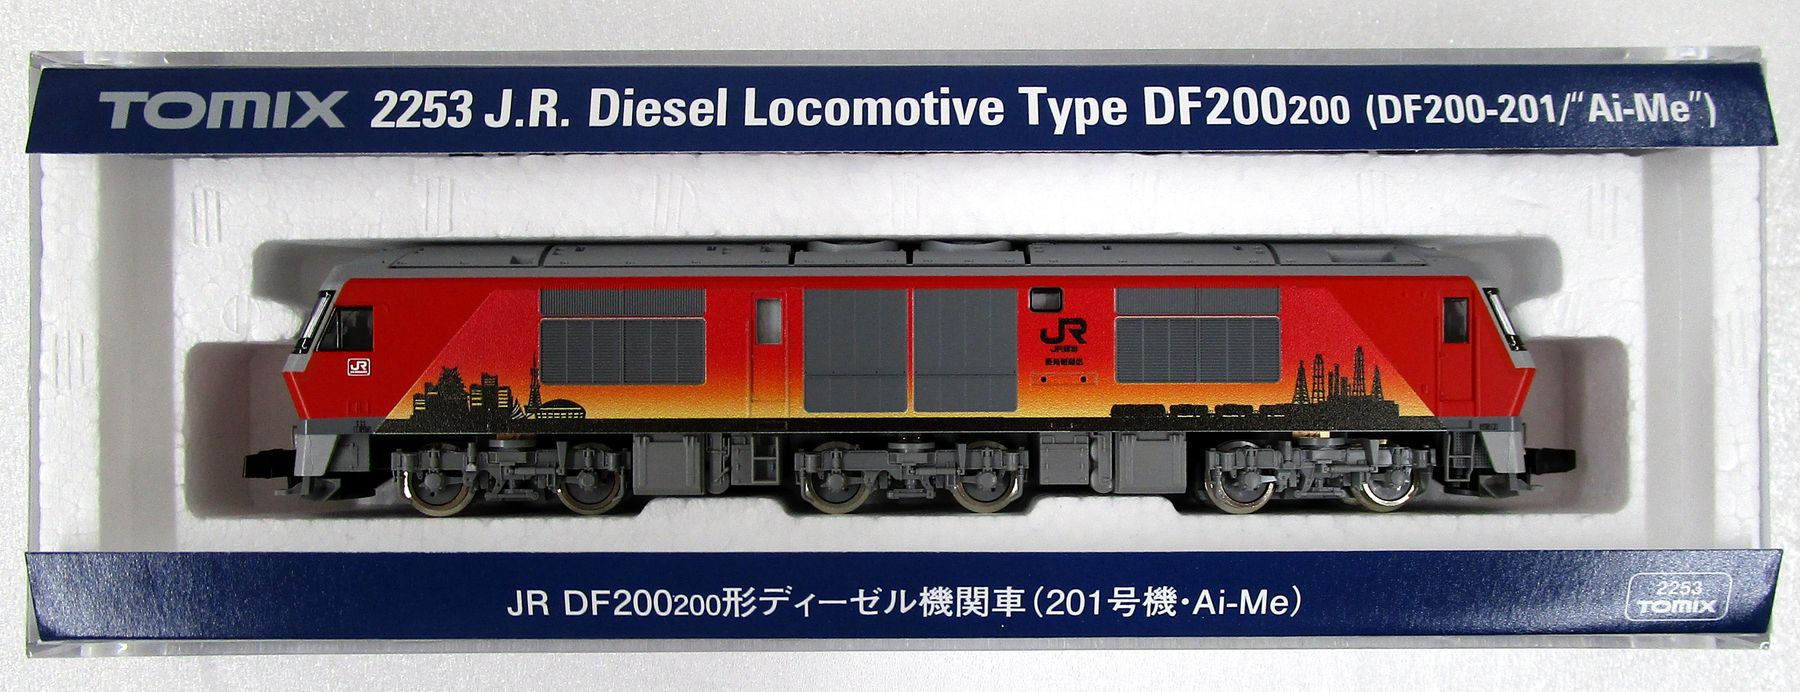 公式]鉄道模型(2253JR DF200-200形ディーゼル機関車(201号機・Ai-Me 